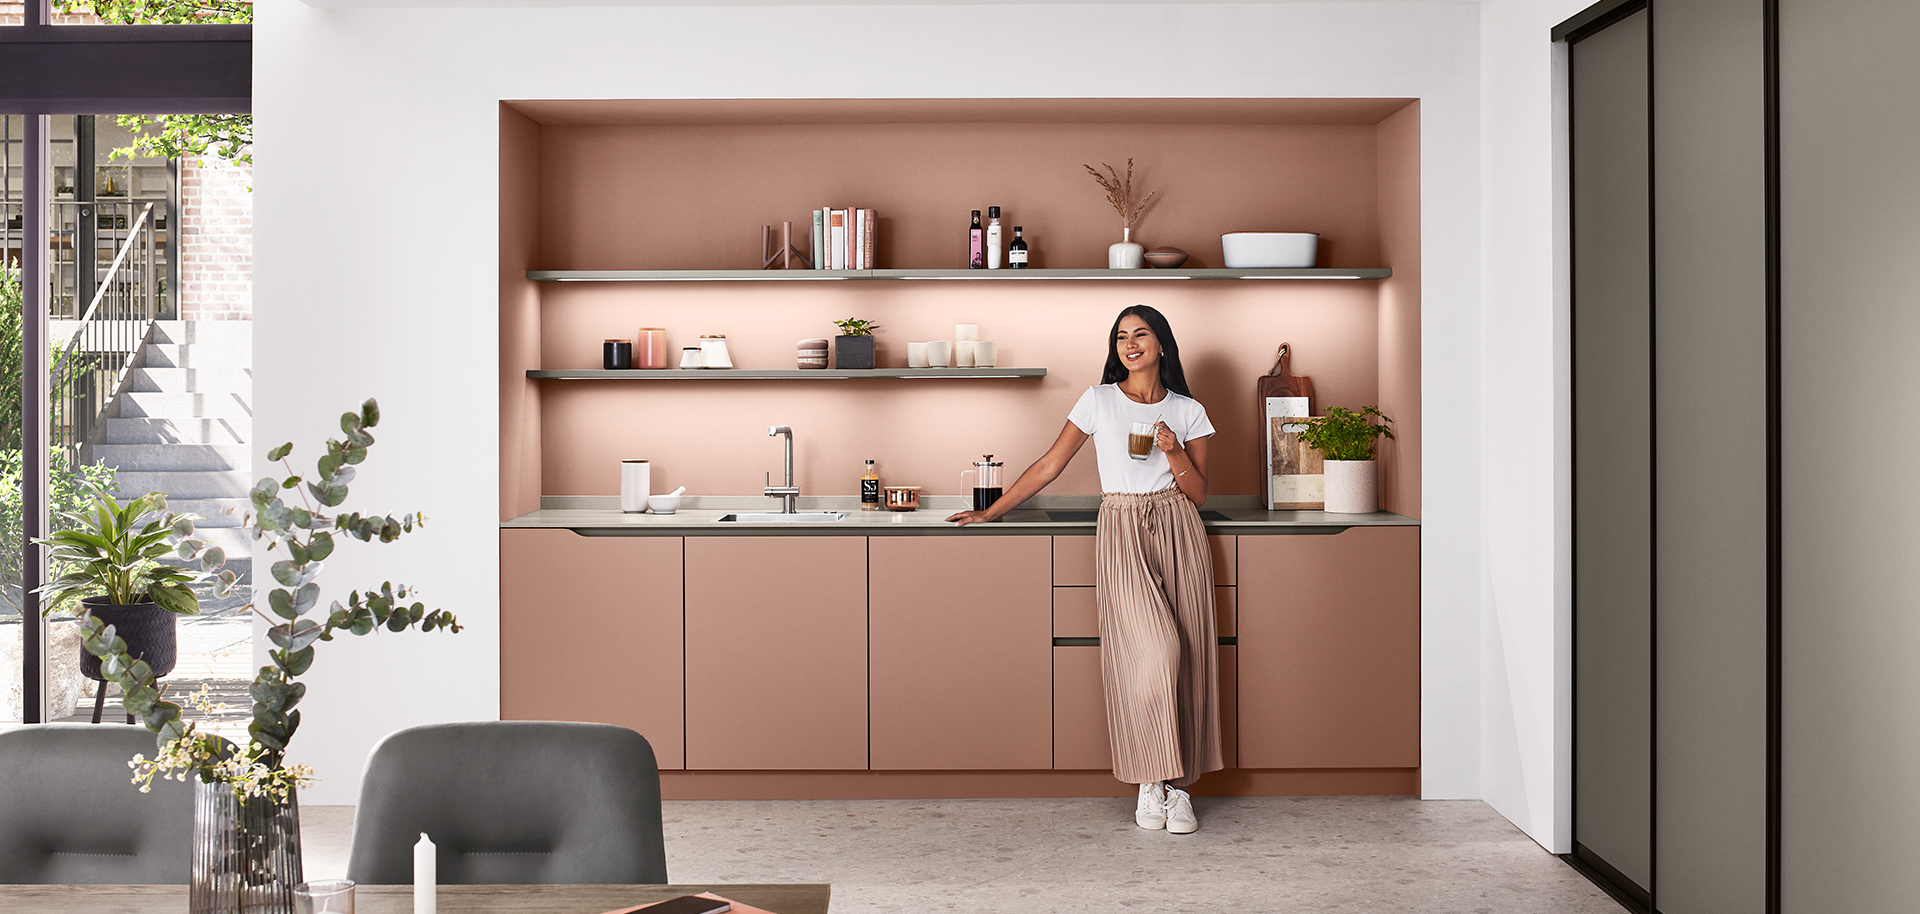 Conception de cuisine moderne avec une personne debout près du comptoir, mettant en vedette des armoires élégantes de couleur rose poudré, des appareils élégants et des étagères ouvertes avec une décoration minimaliste.